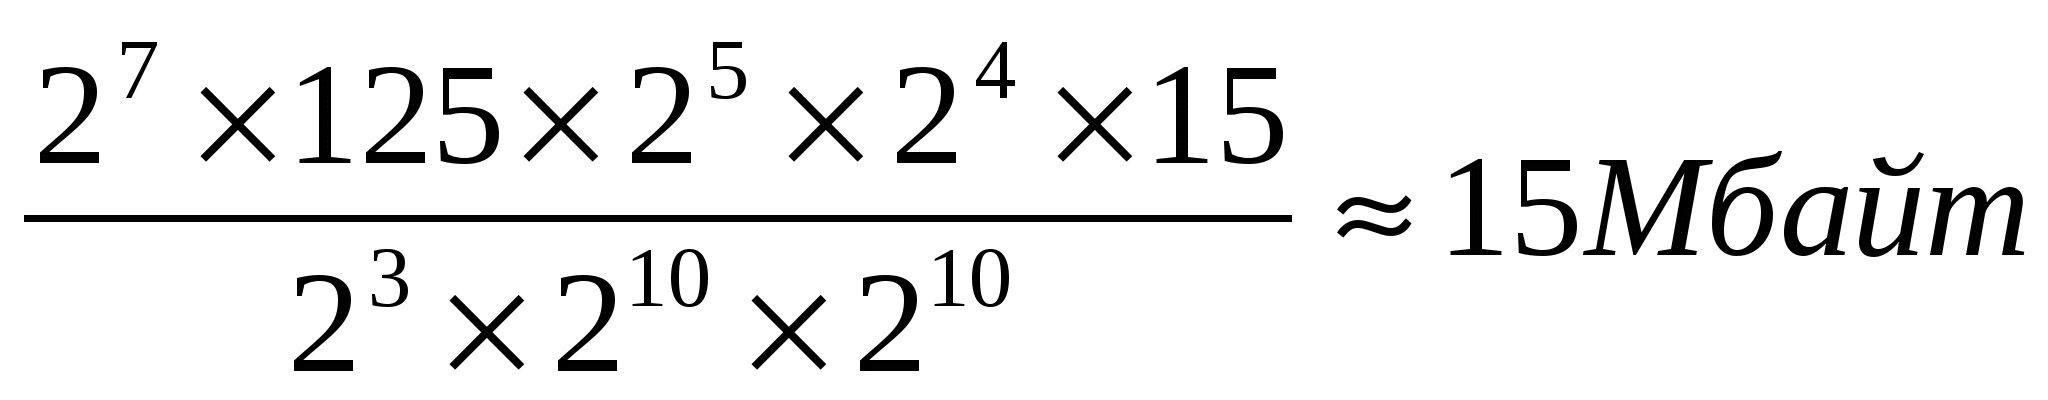 План-конспект урока информатики и ИКТ в 10 классе Запись чисел в различных системах счисления